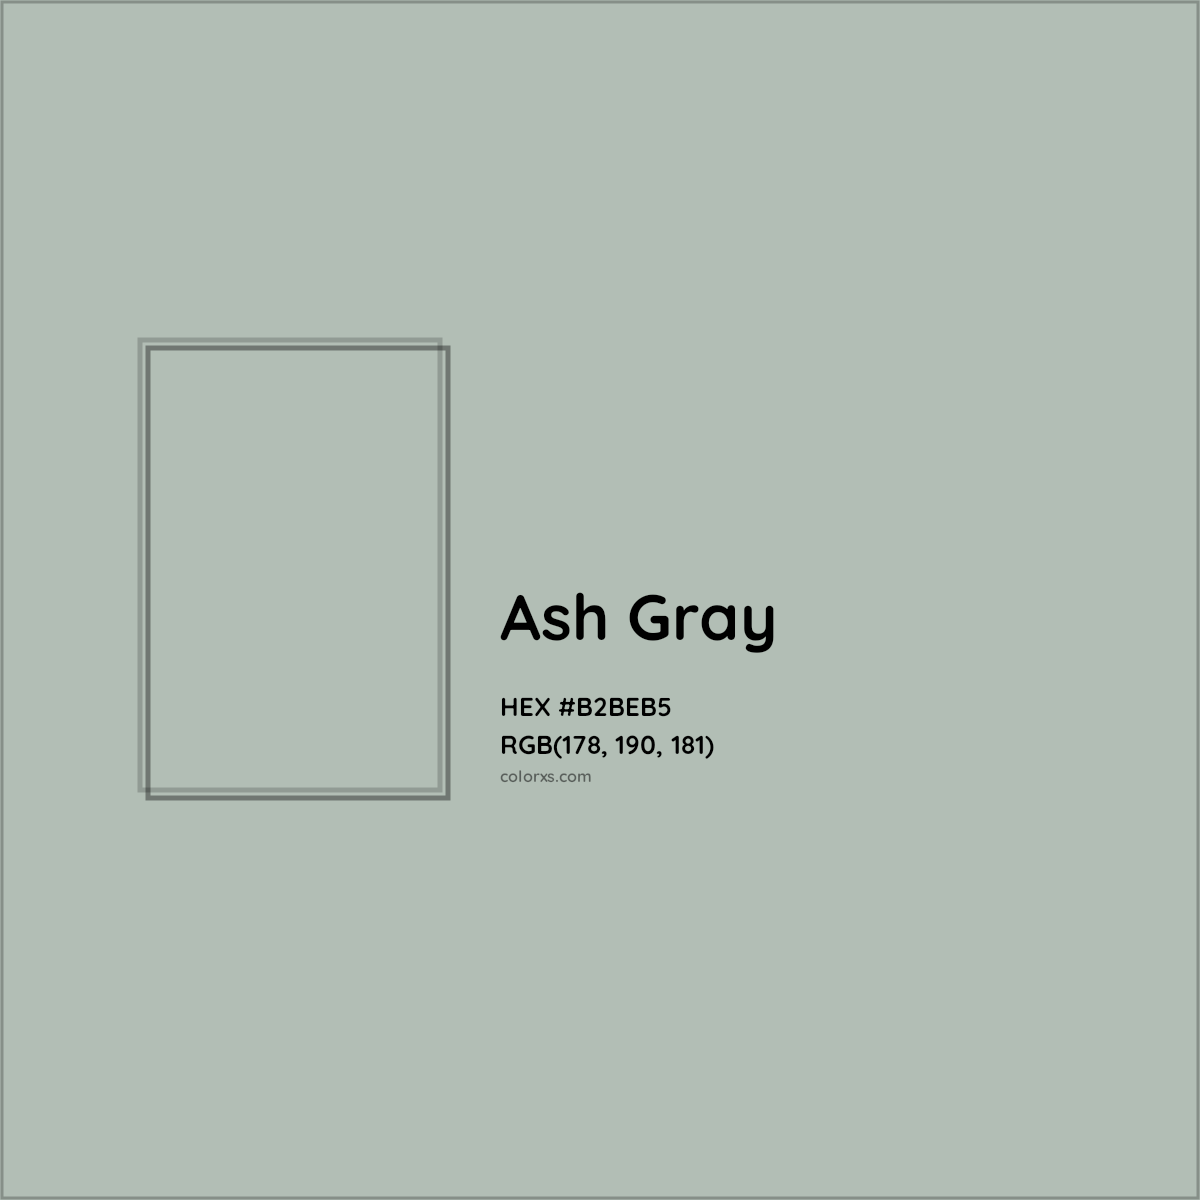 HEX #B2BEB5 Ash Gray Color - Color Code